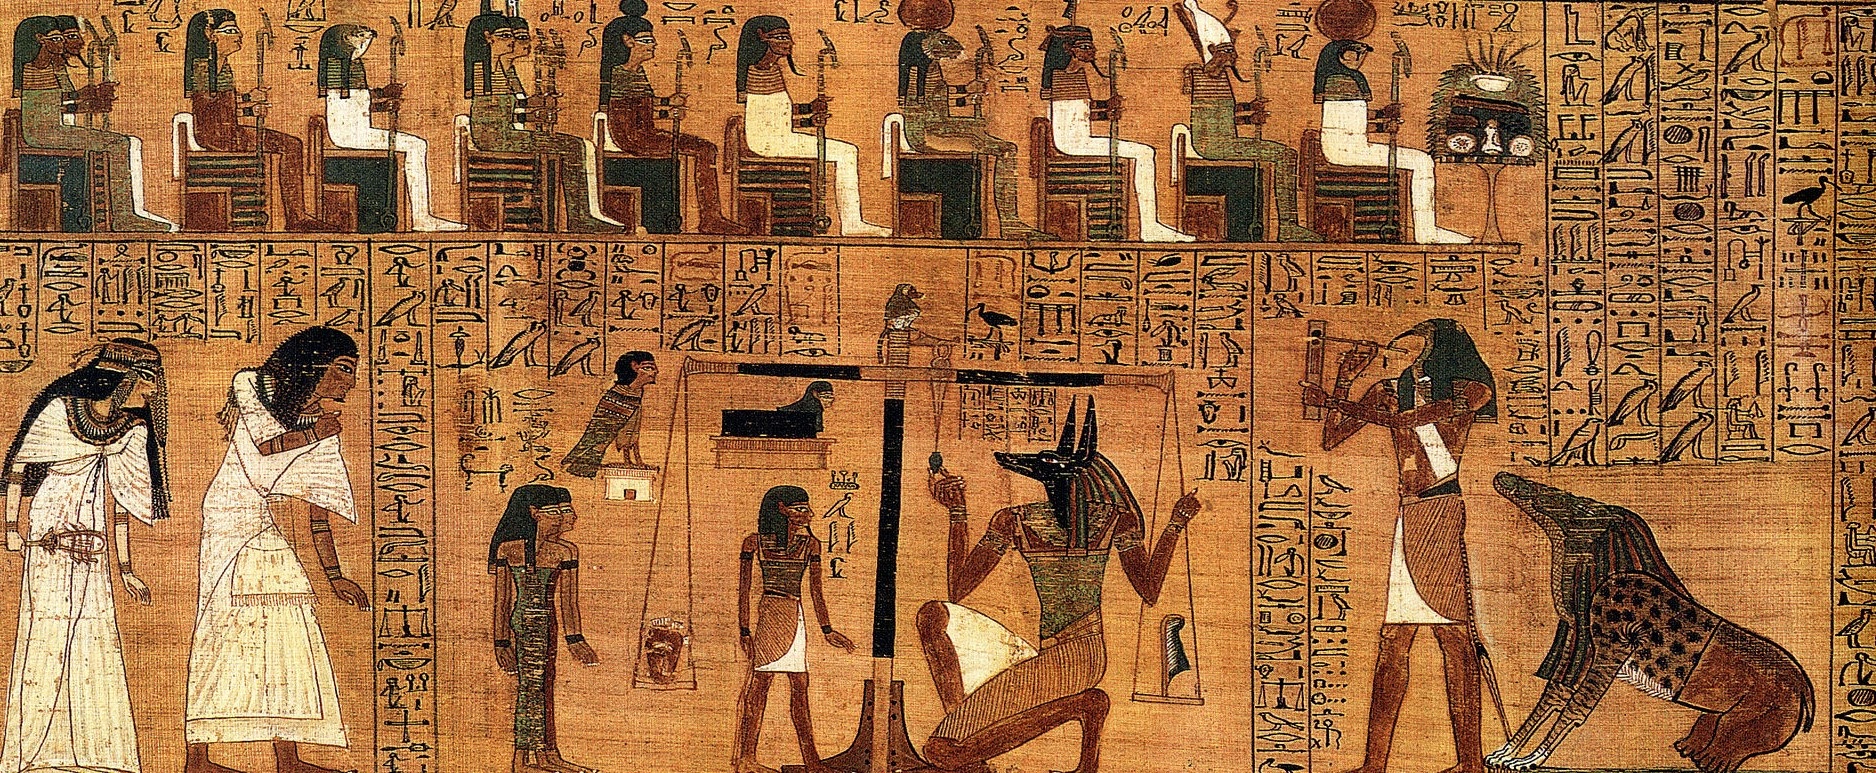 Zeichnung von ägyptischen Figuren und Tieren. In der Mitte Anubis und ein Mensch bei einer Waage, rechts ein adlerköpfiger Mensch, links zwei weiß gekleidete Figuren. Darüber Hieroglyphen und eine Reihe sitzender Figuren. © Wikimedia